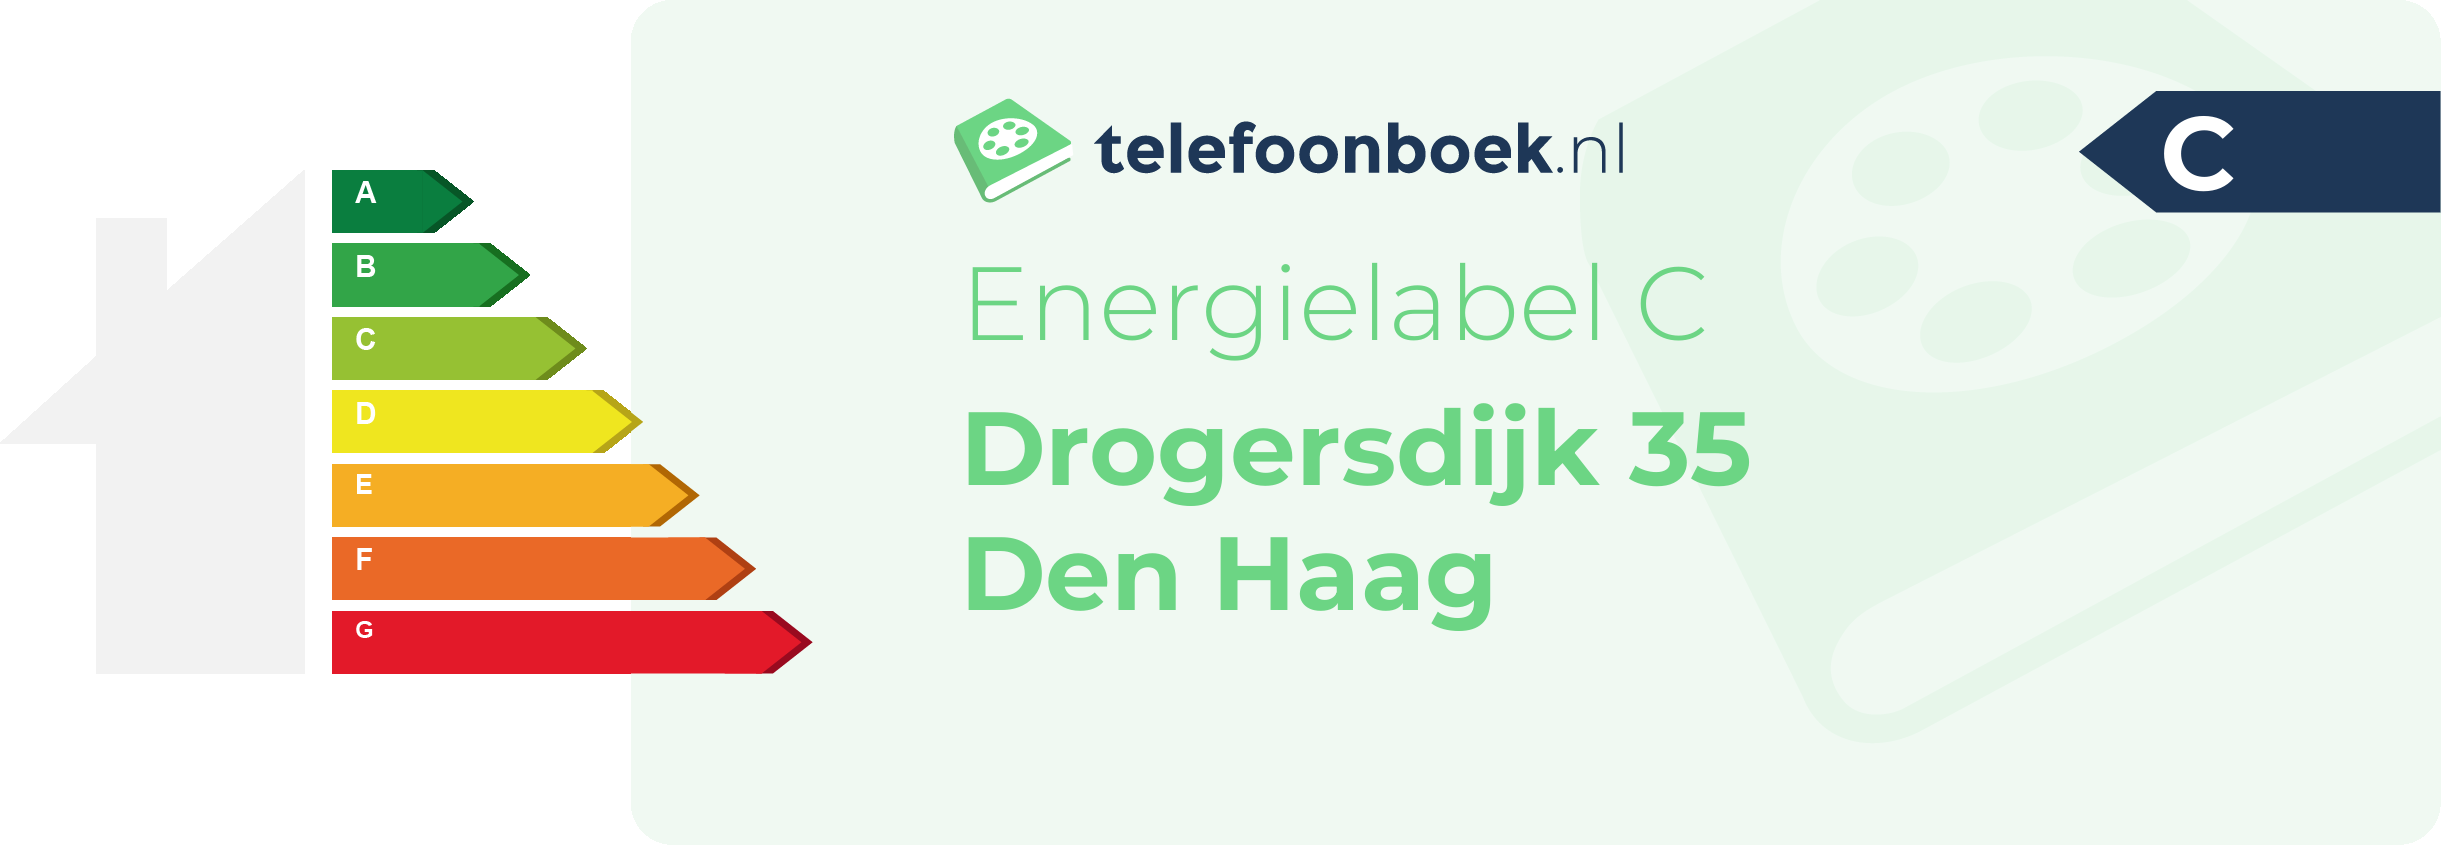 Energielabel Drogersdijk 35 Den Haag